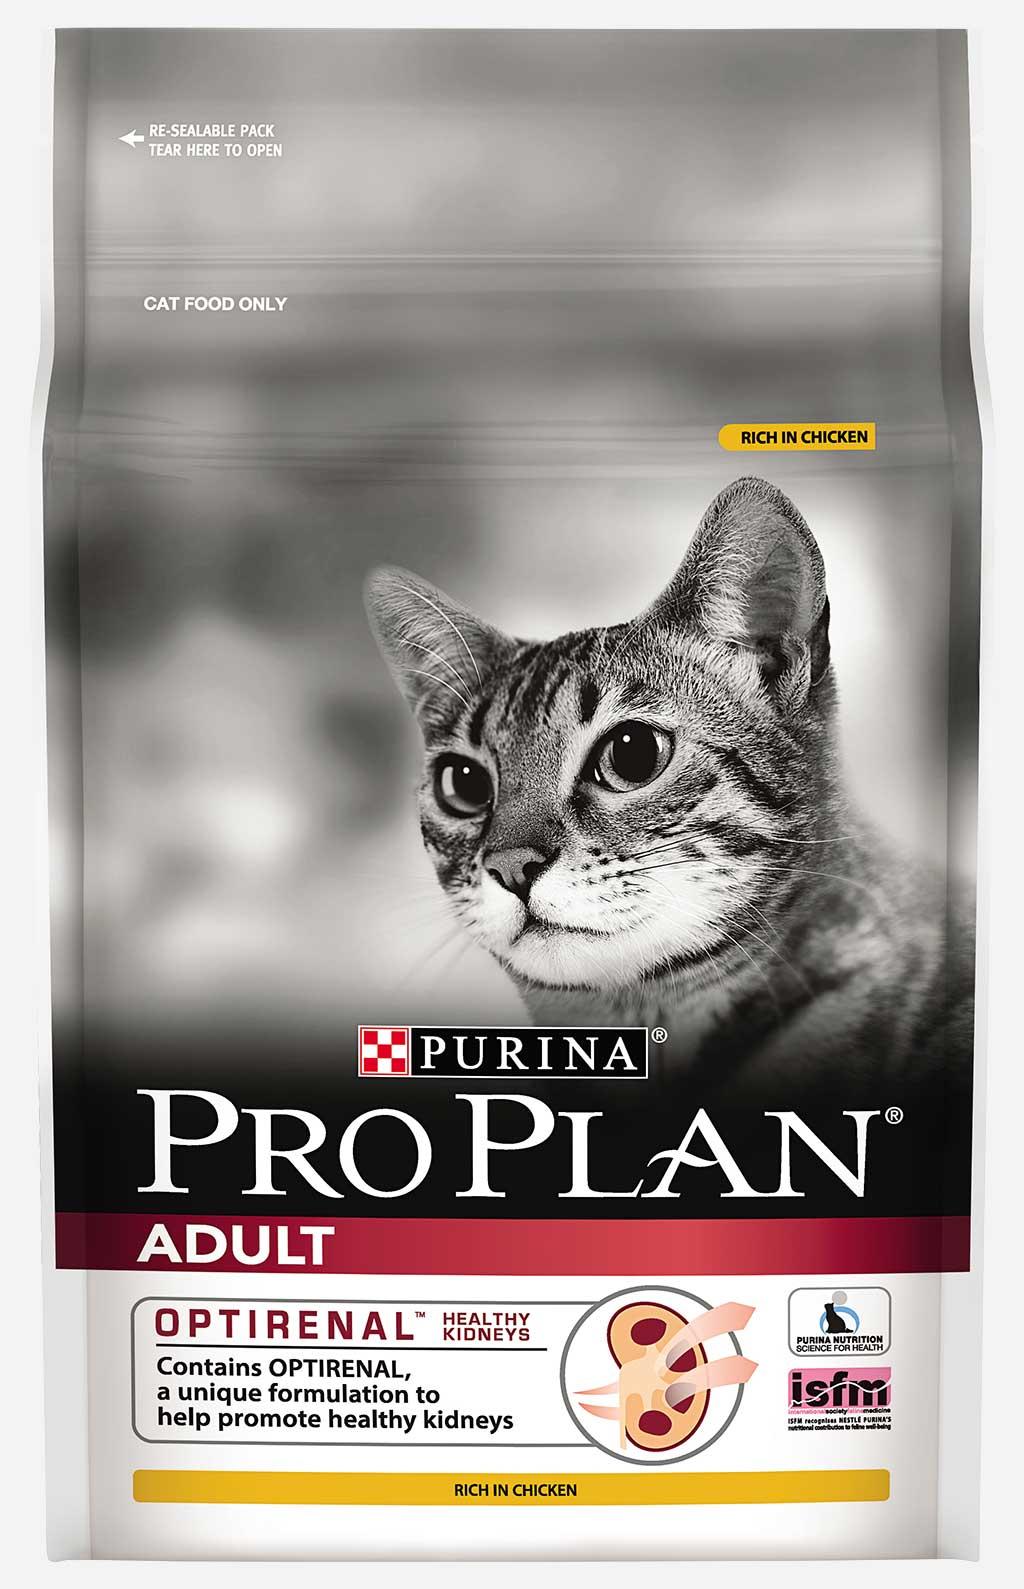 Pro Plan Chicken and Rice อาหารแมว สูตรไก่และข้าว สูตรใหม่ สำหรับแมวโตอายุ 1 ปีขึ้นไป (1.3 กิโลกรัม/ถุง)